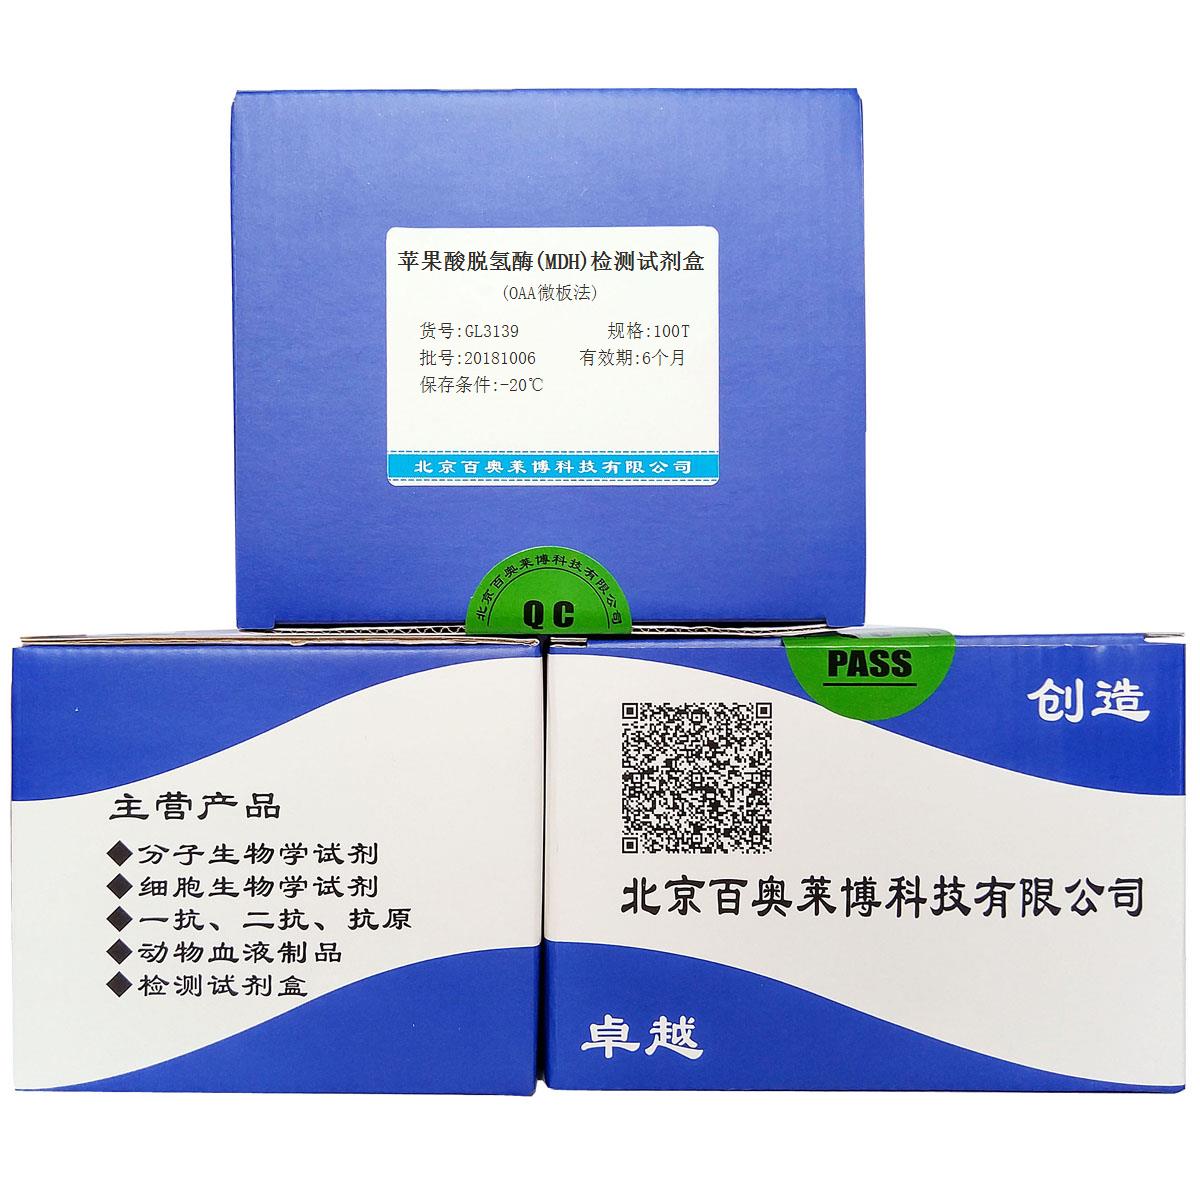 苹果酸脱氢酶(MDH)检测试剂盒(OAA微板法)